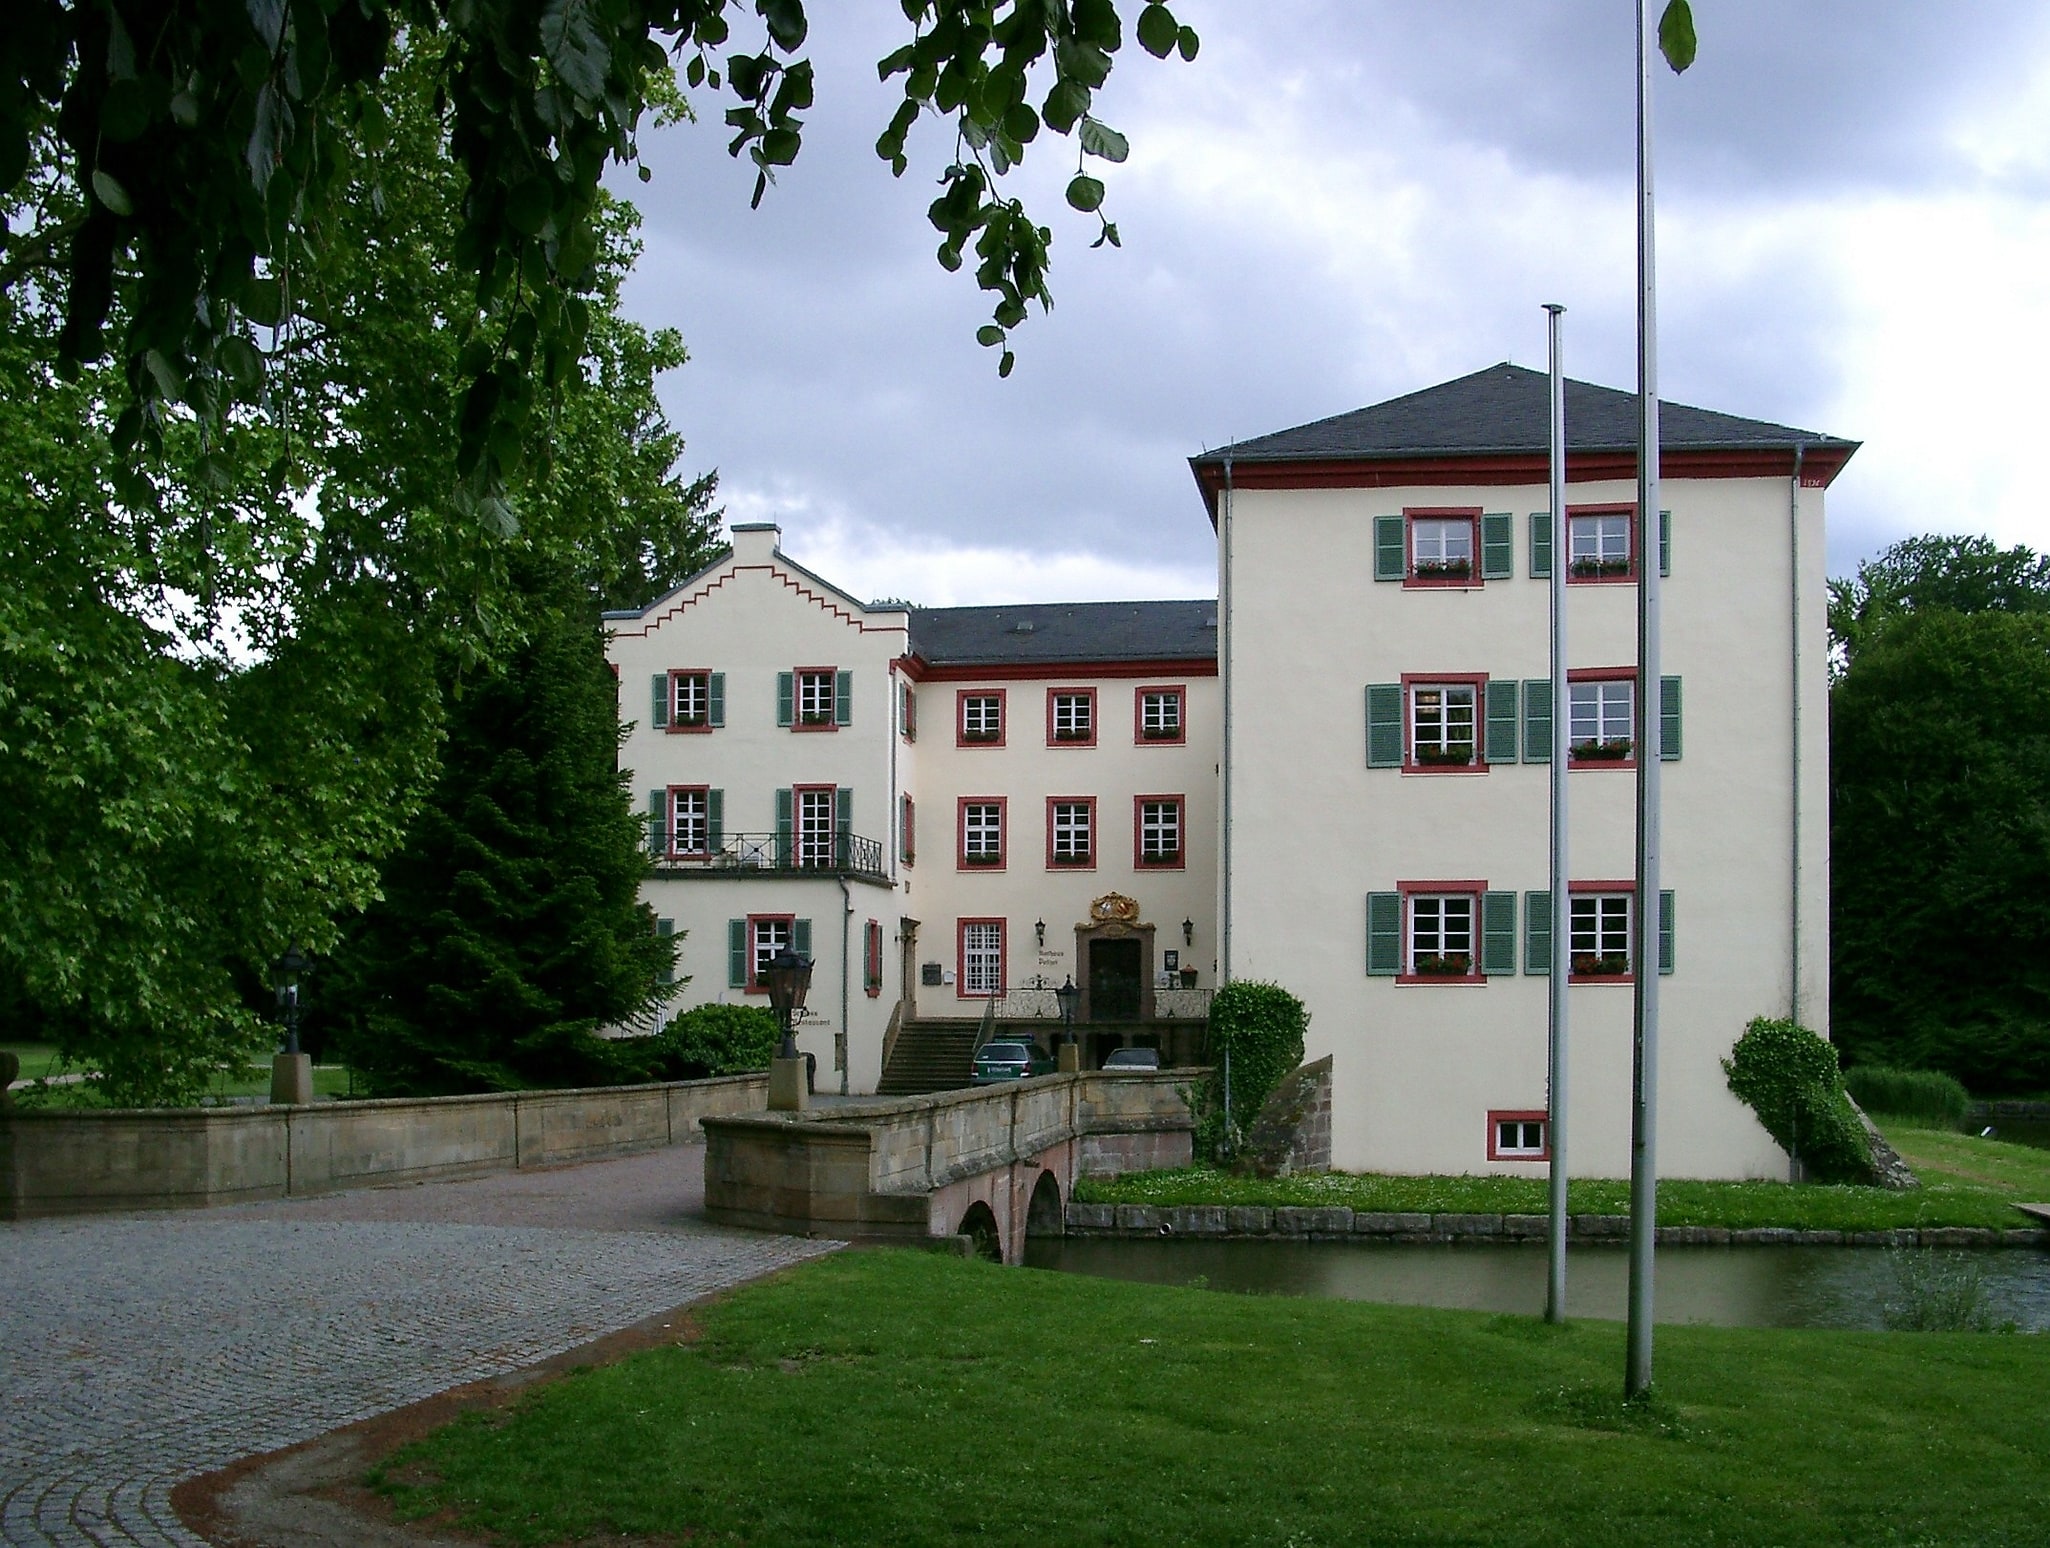 Angelbachtal, Alemania